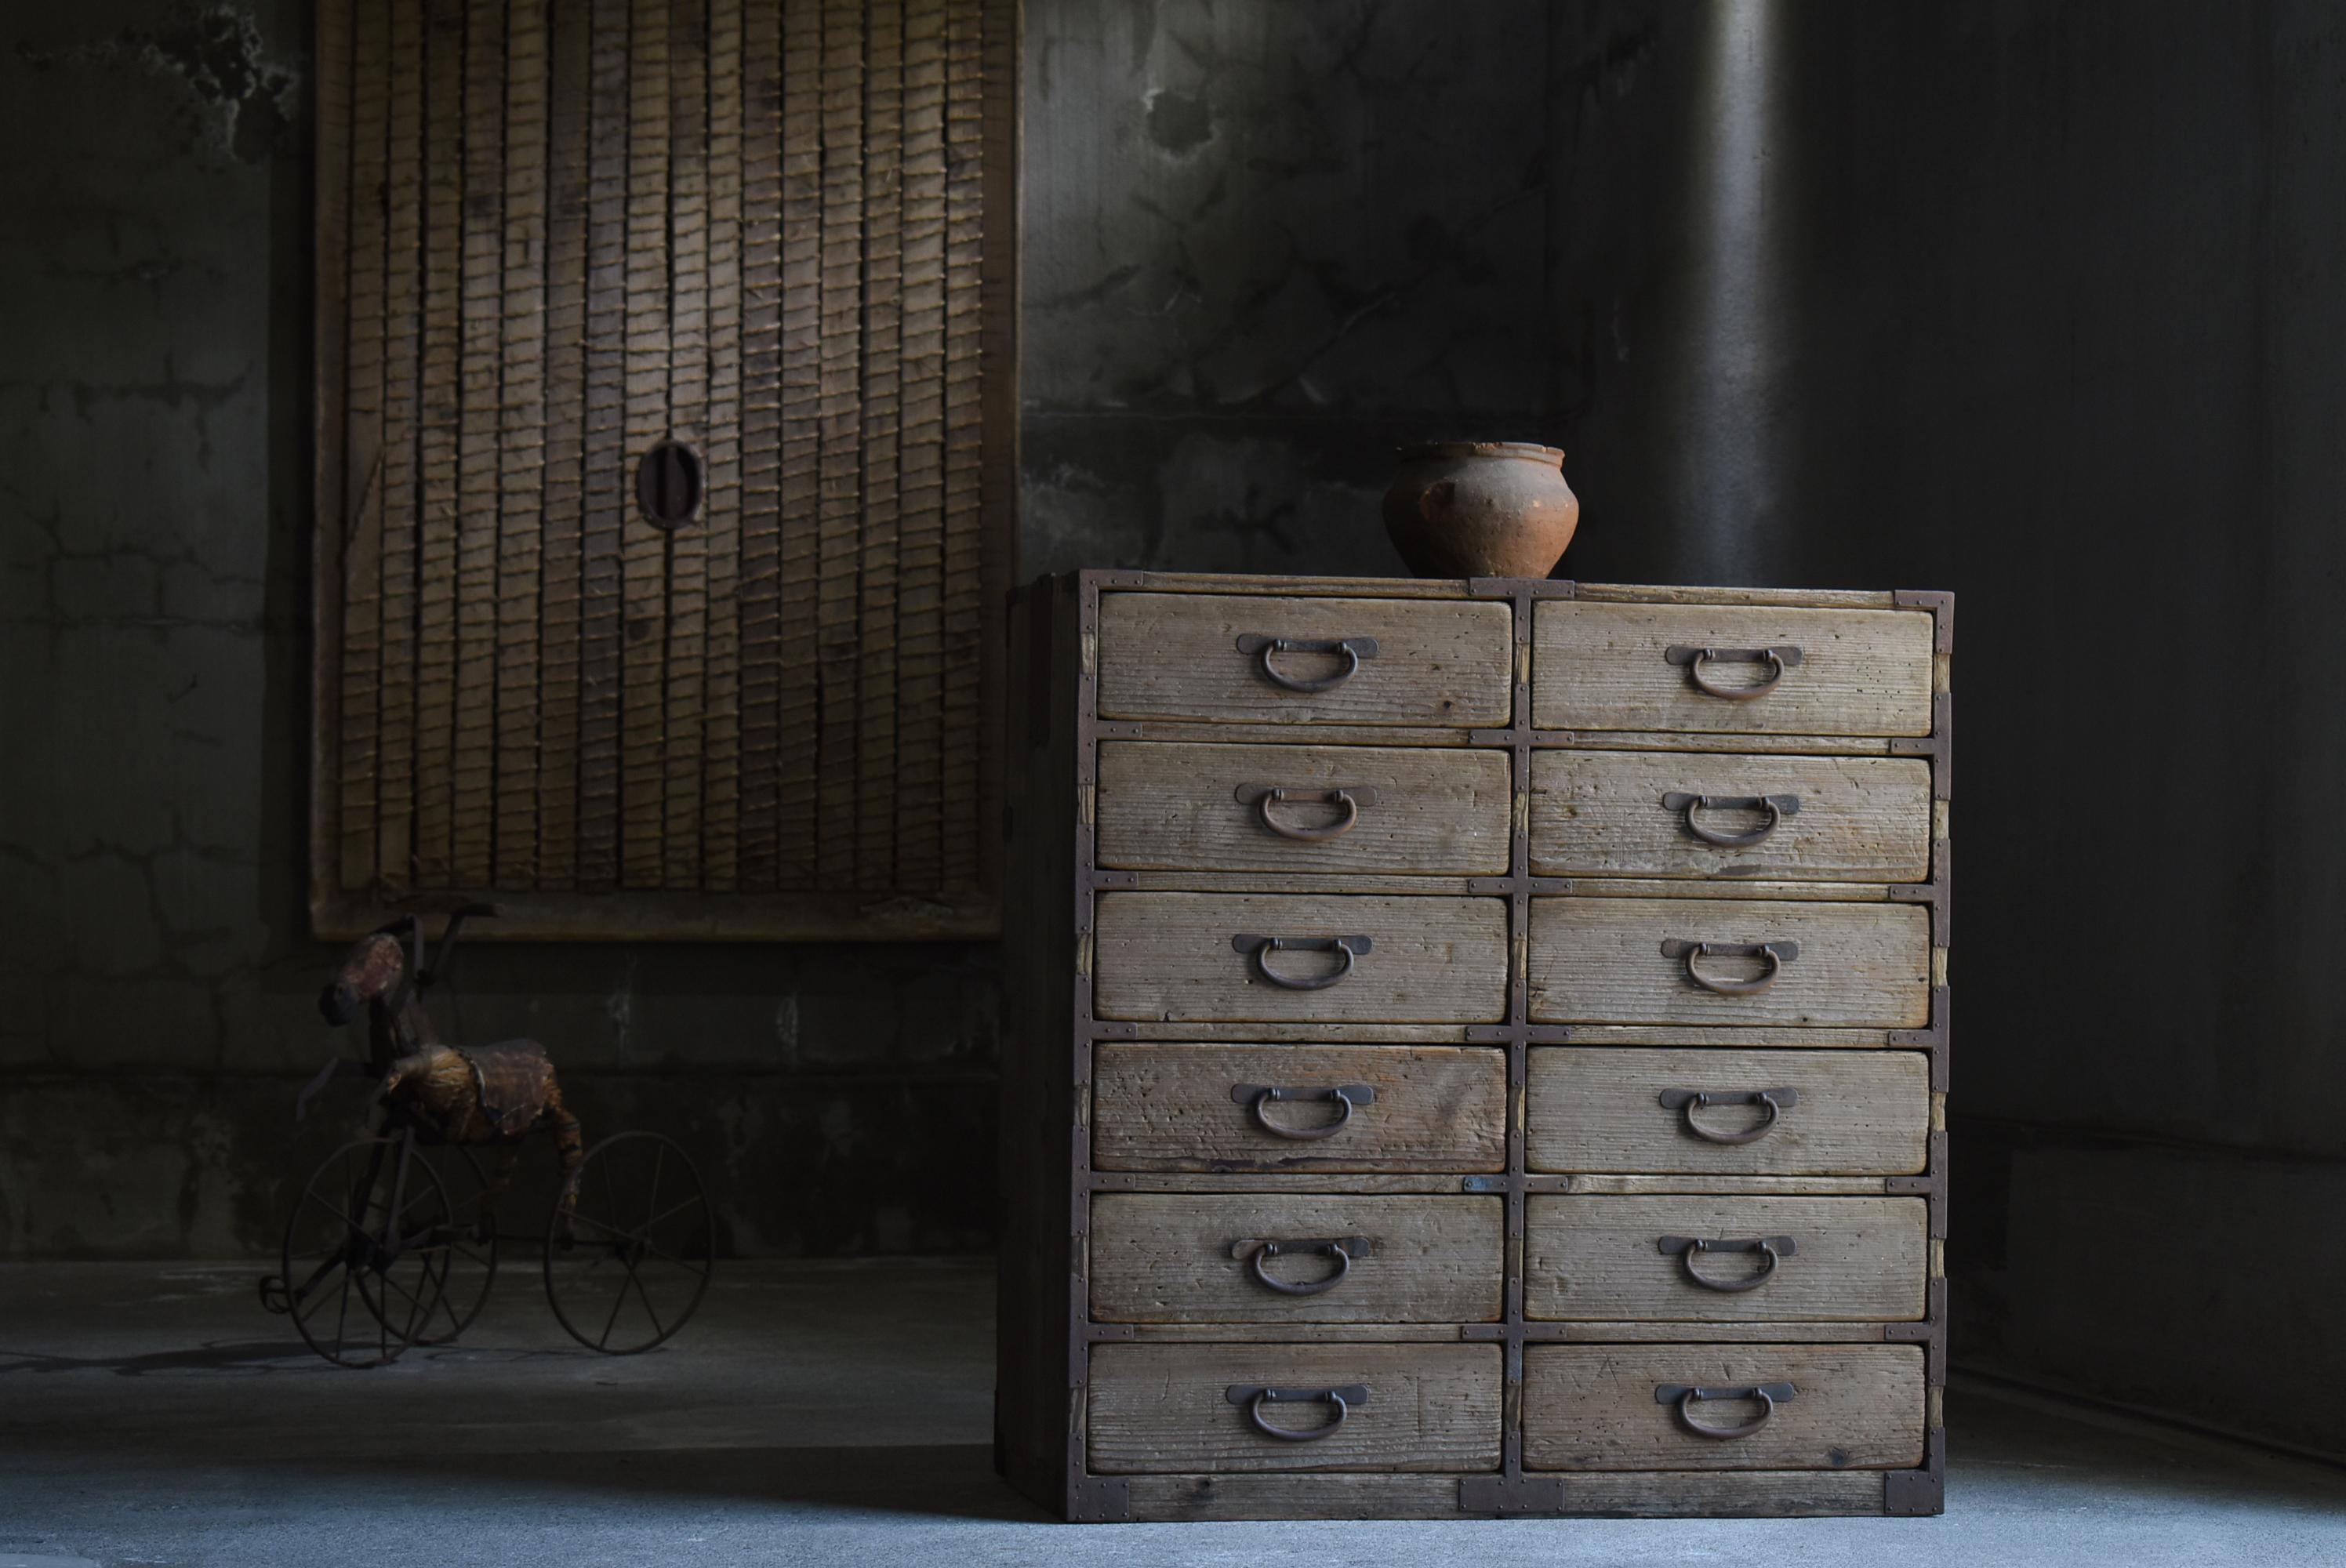 Très ancien tiroir de rangement fabriqué au Japon.
Le mobilier date de la période Meiji (1860-1900).
Le matériau est du cèdre. Les poignées sont en fer.

Le design est simple et épuré.
C'est le summum de la simplicité.
L'âge lui confère une saveur